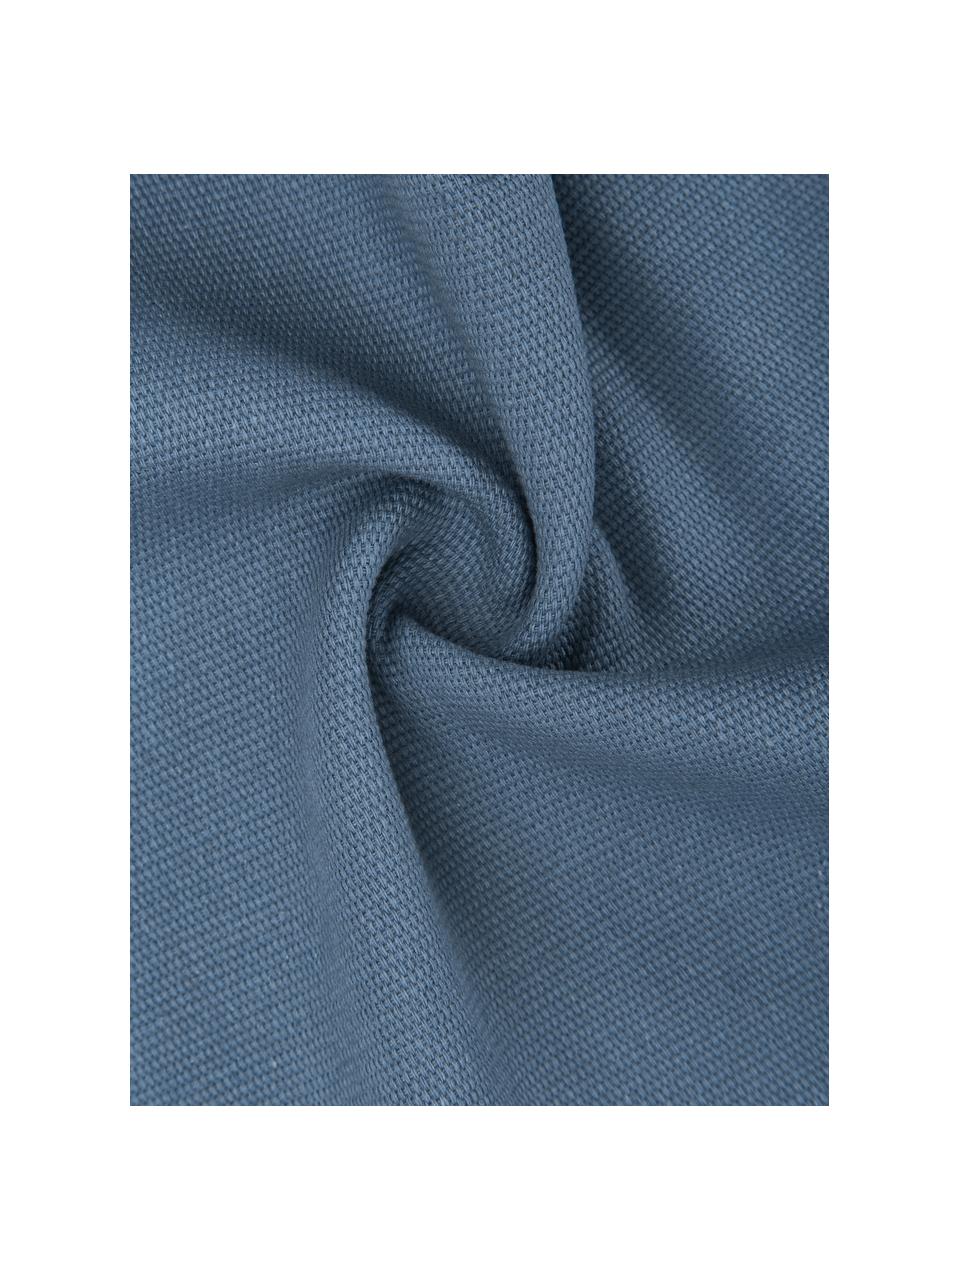 Baumwoll-Kissenhülle Mads in Blau, 100% Baumwolle, Blau, B 30 x L 50 cm